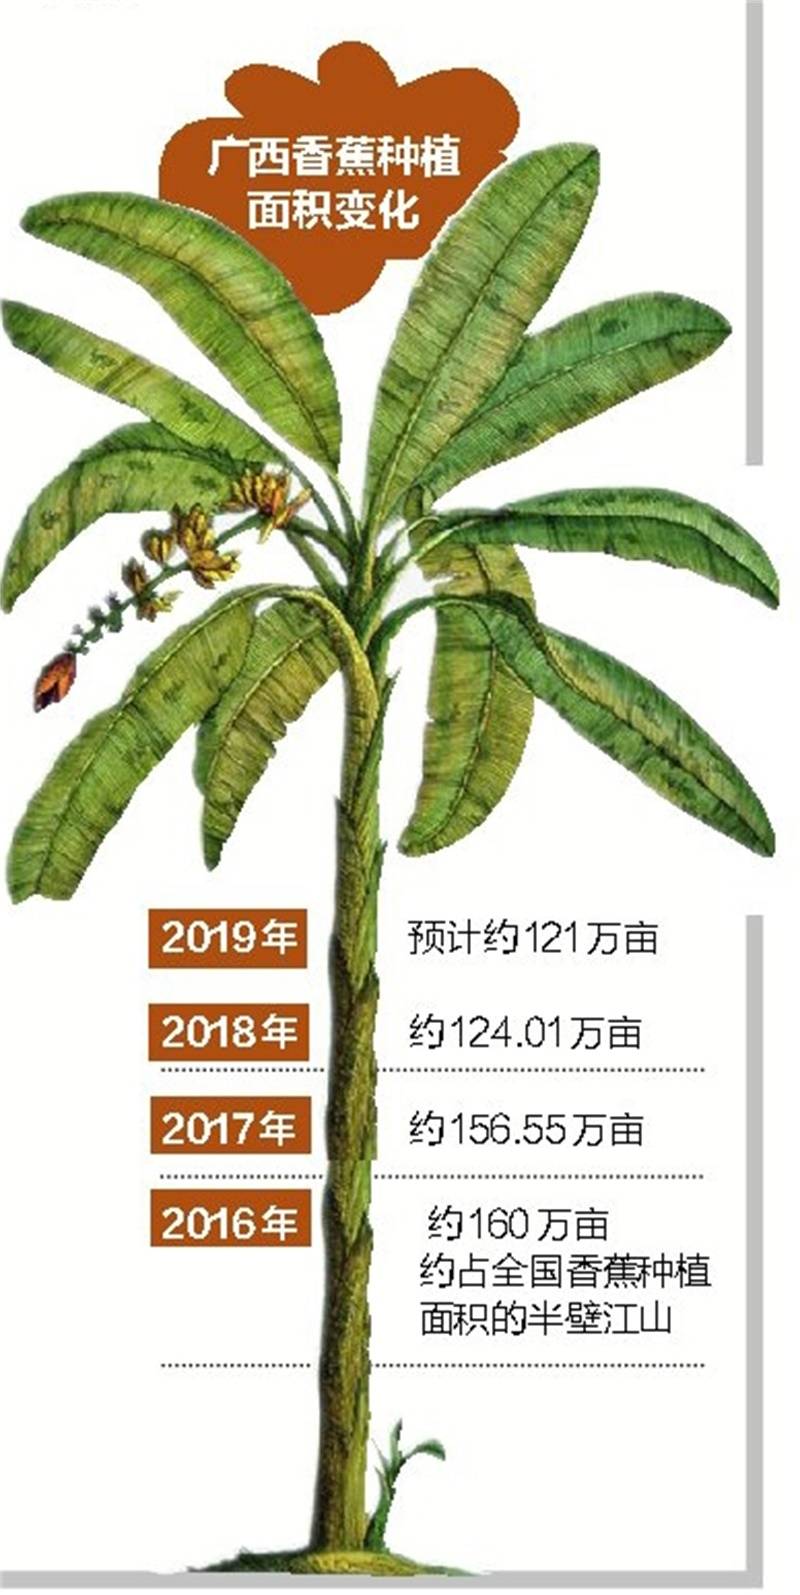 广西本地香蕉较往年“娇贵”，每公斤价格为7~8元